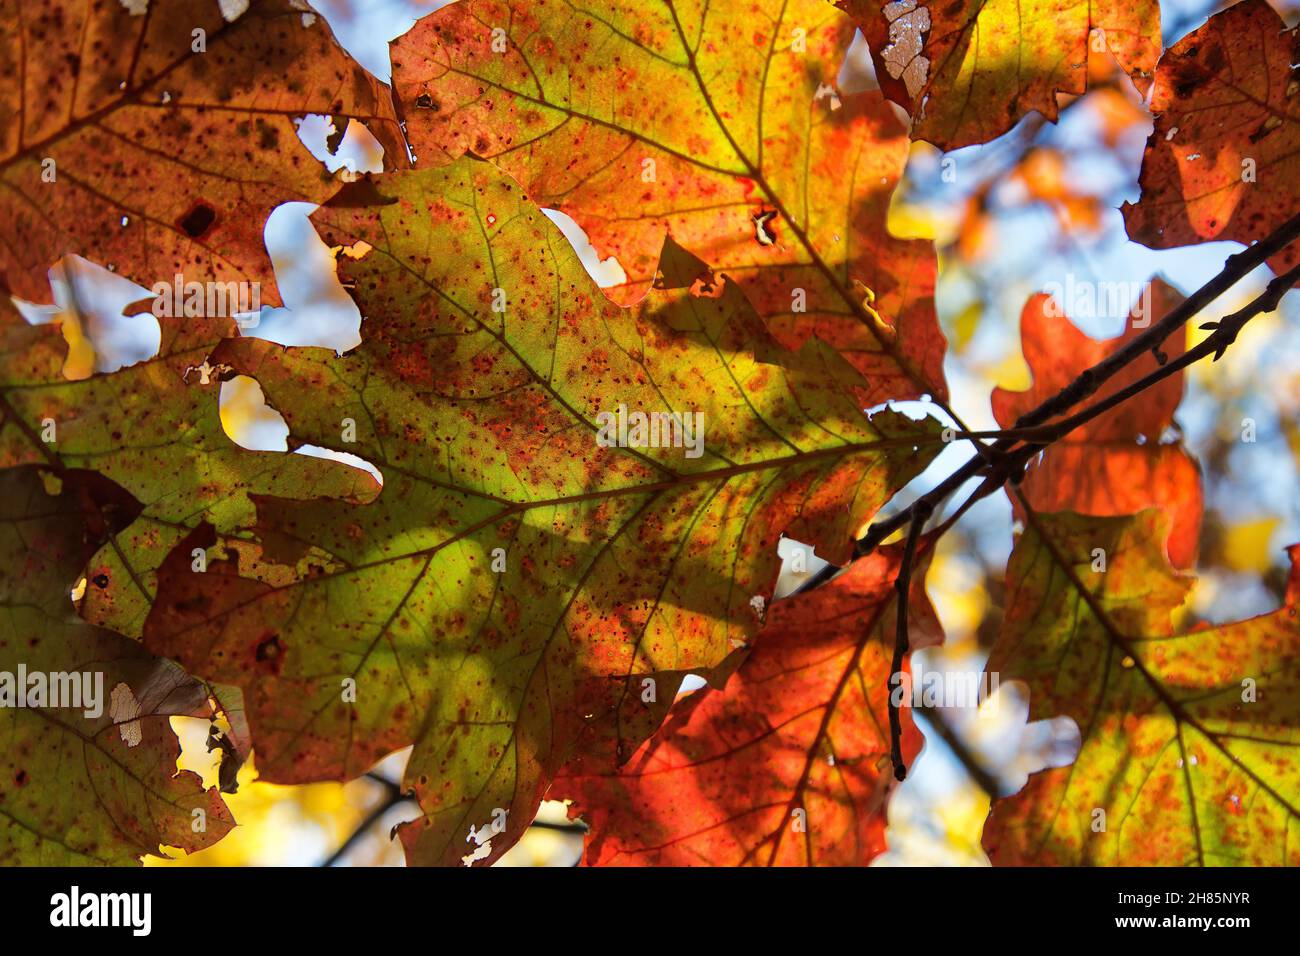 Scarlet Oak 'Quercus coccinea' Fall Foliage, Missouri. Stock Photo